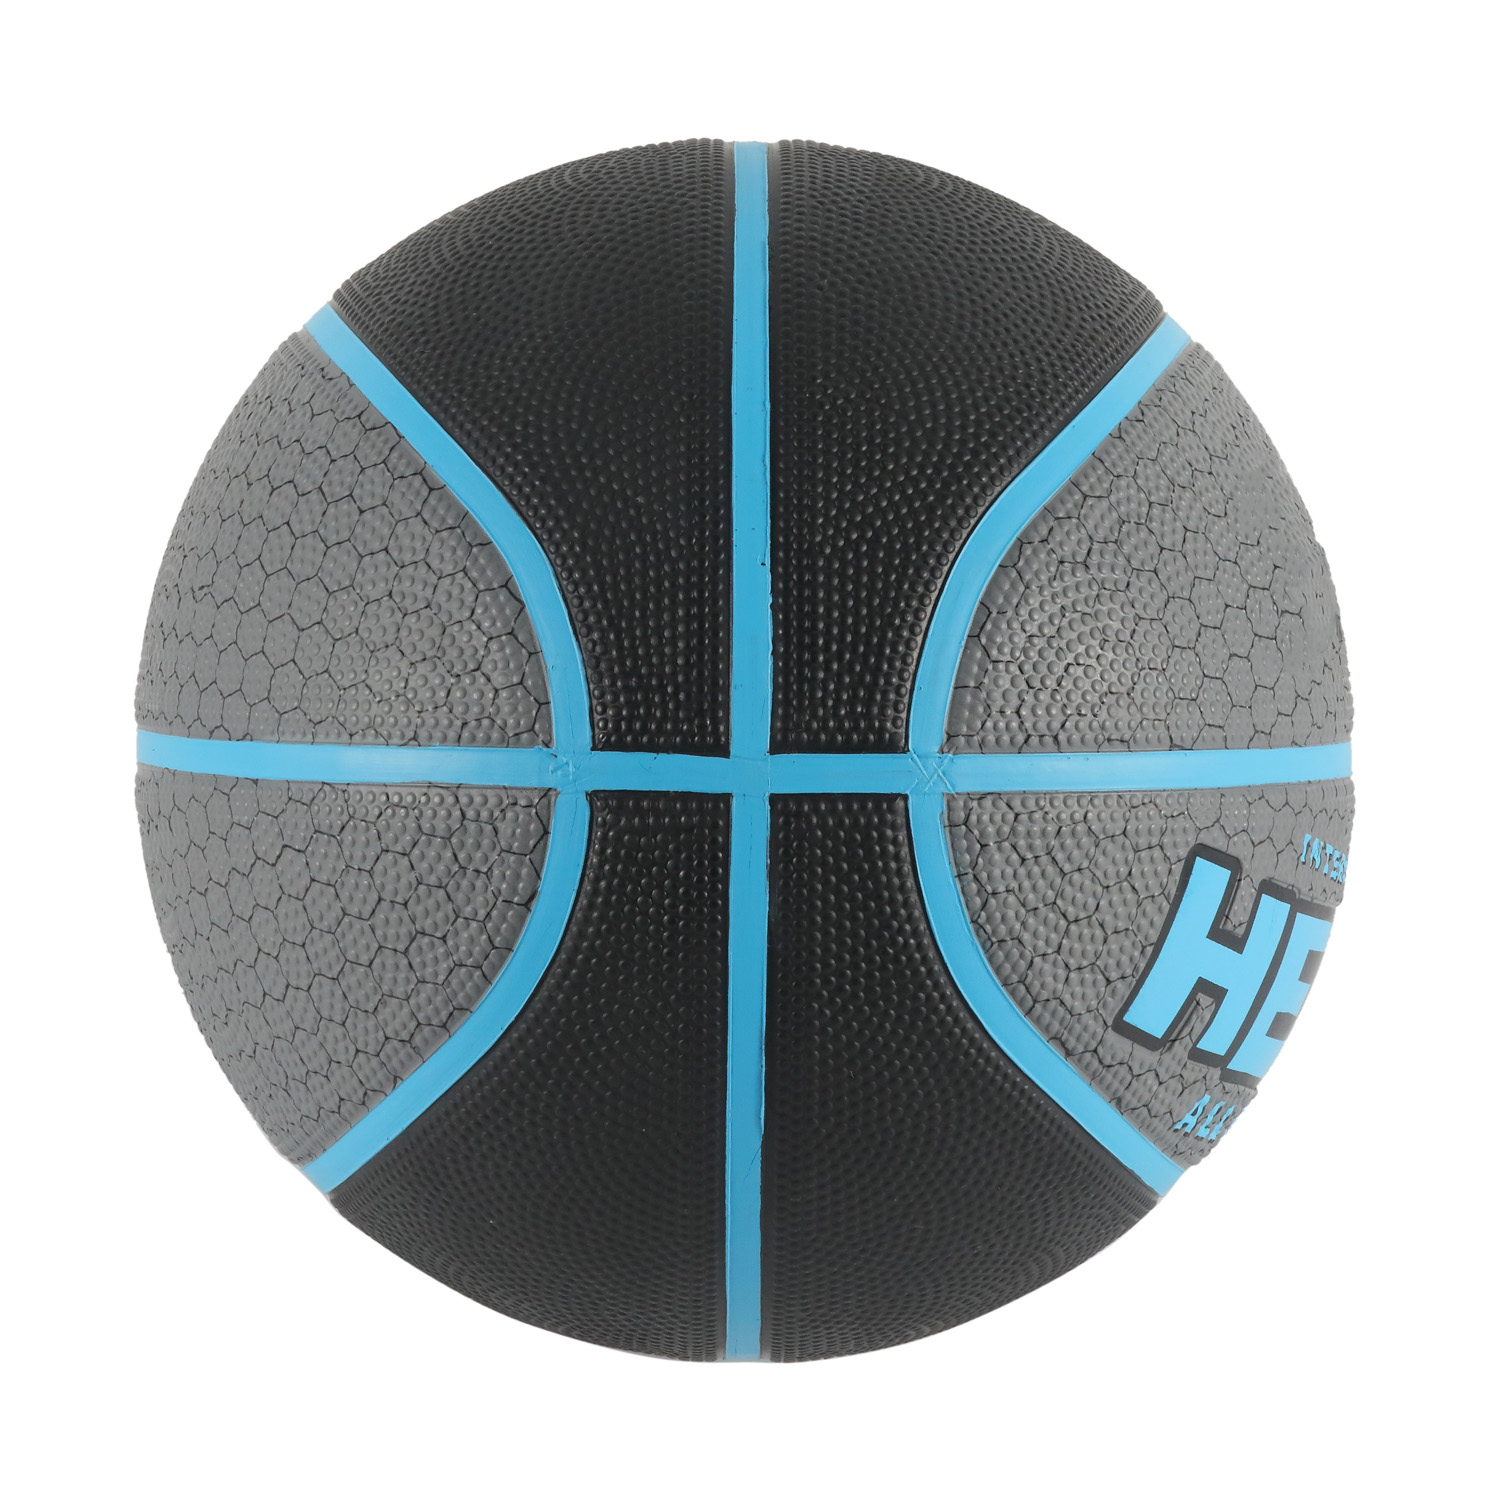 Bola de basquete laminada tamanho oficial em capa de PVC marrom